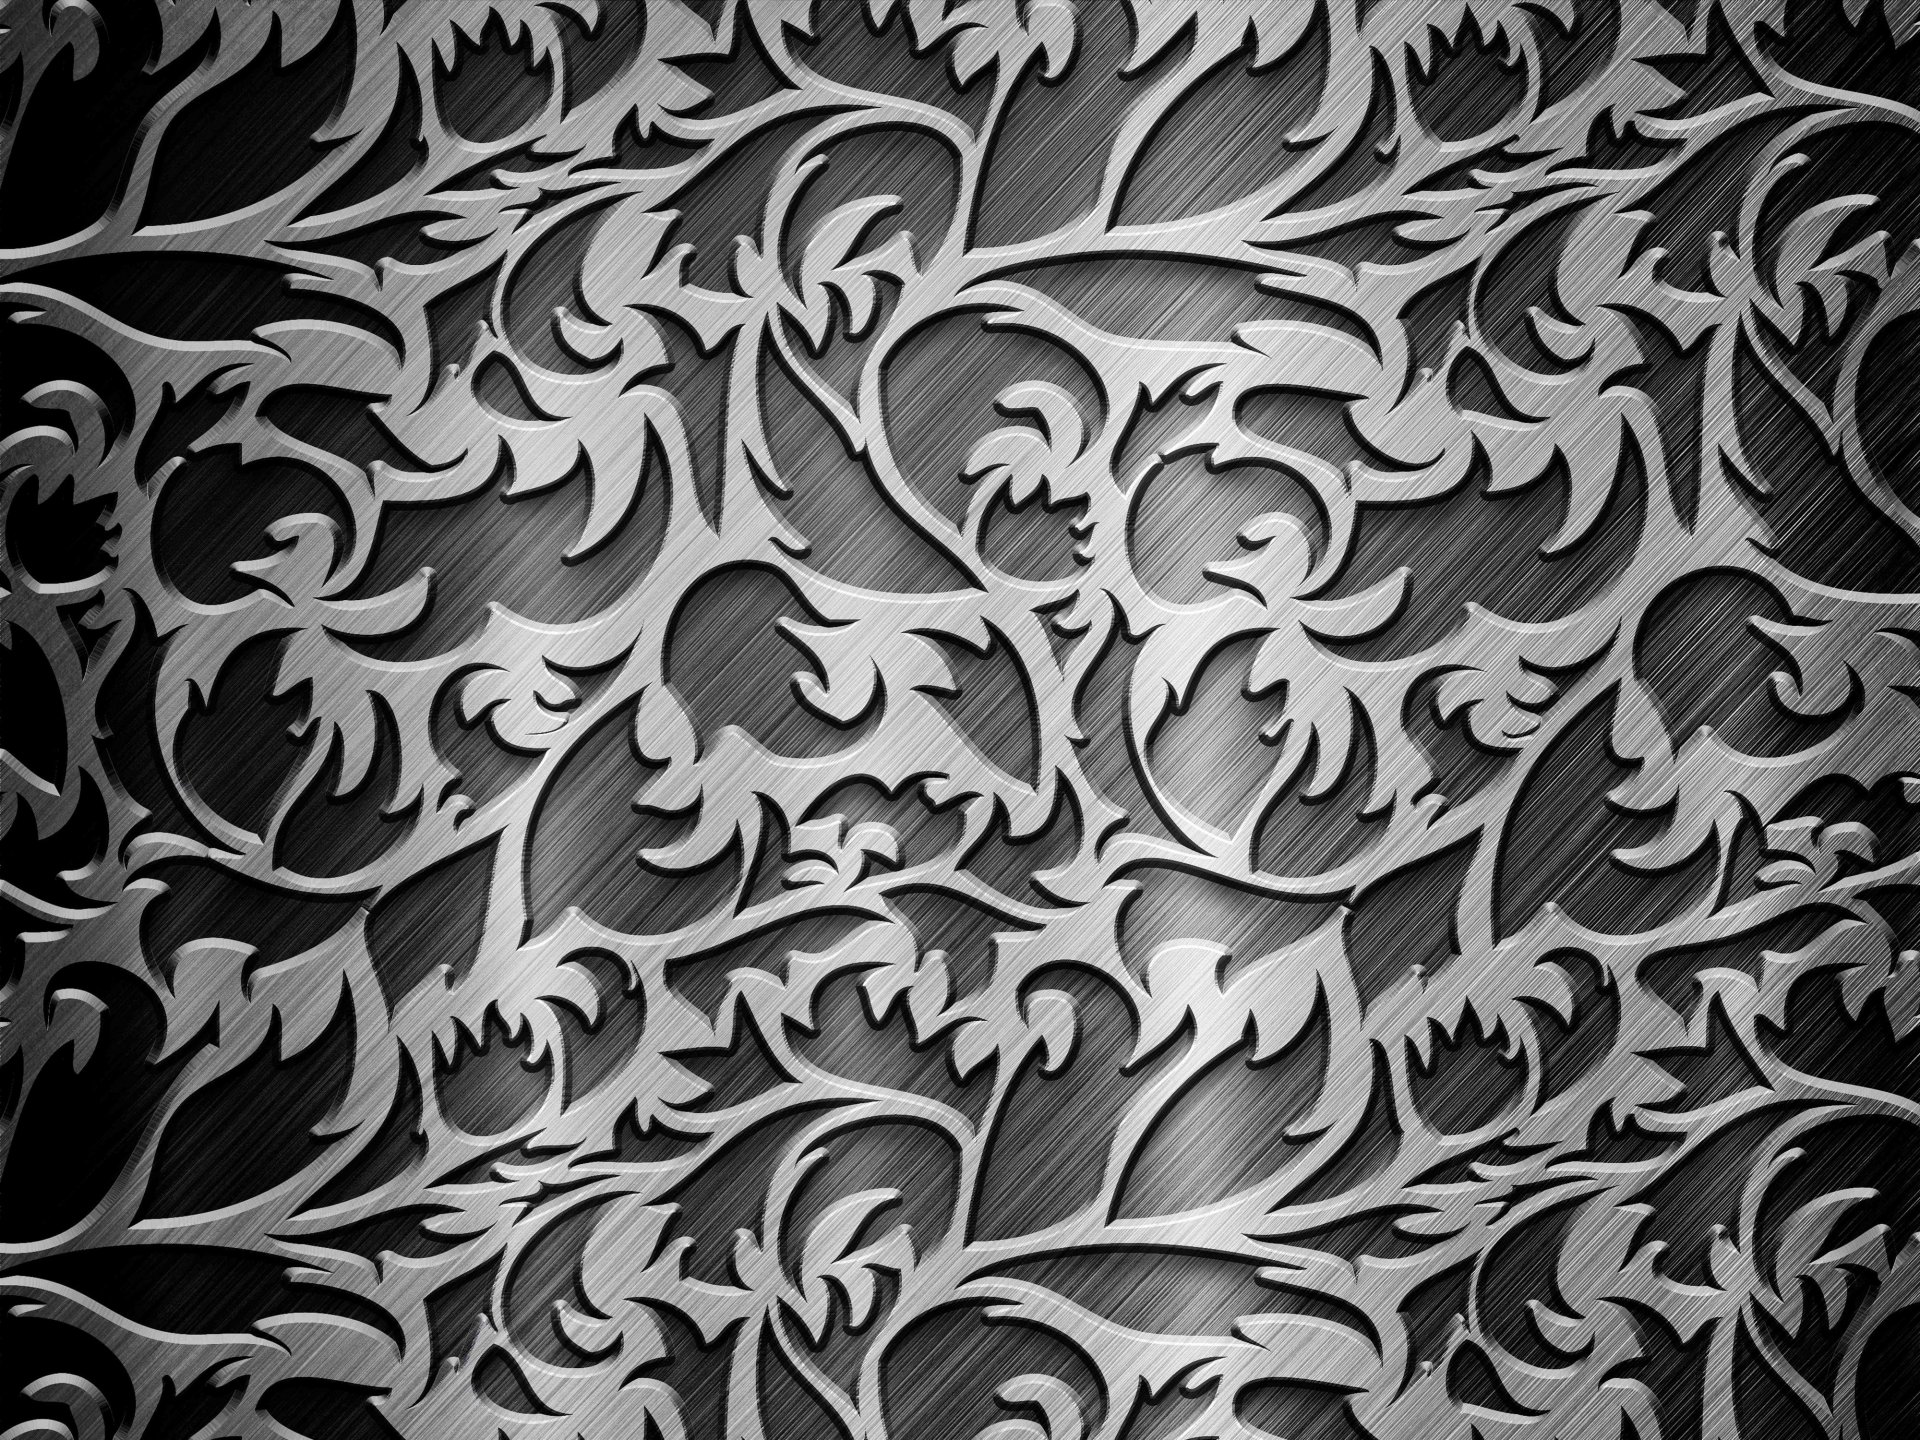 シルバー柄の壁紙,パターン,黒と白,設計,葉,モノクローム